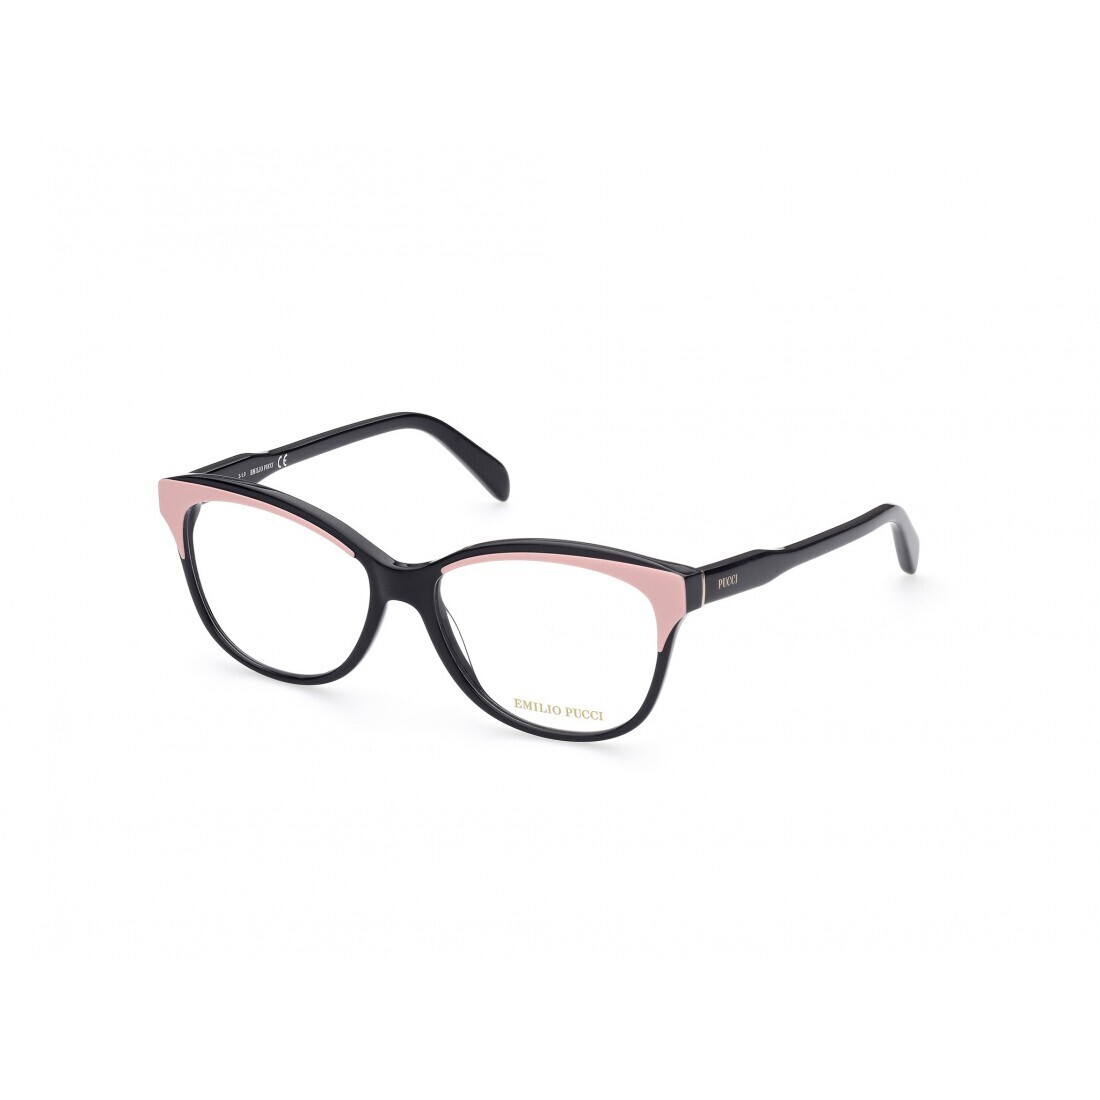 EMILIO PUCCI 5164/V 005 black e pink occhiali